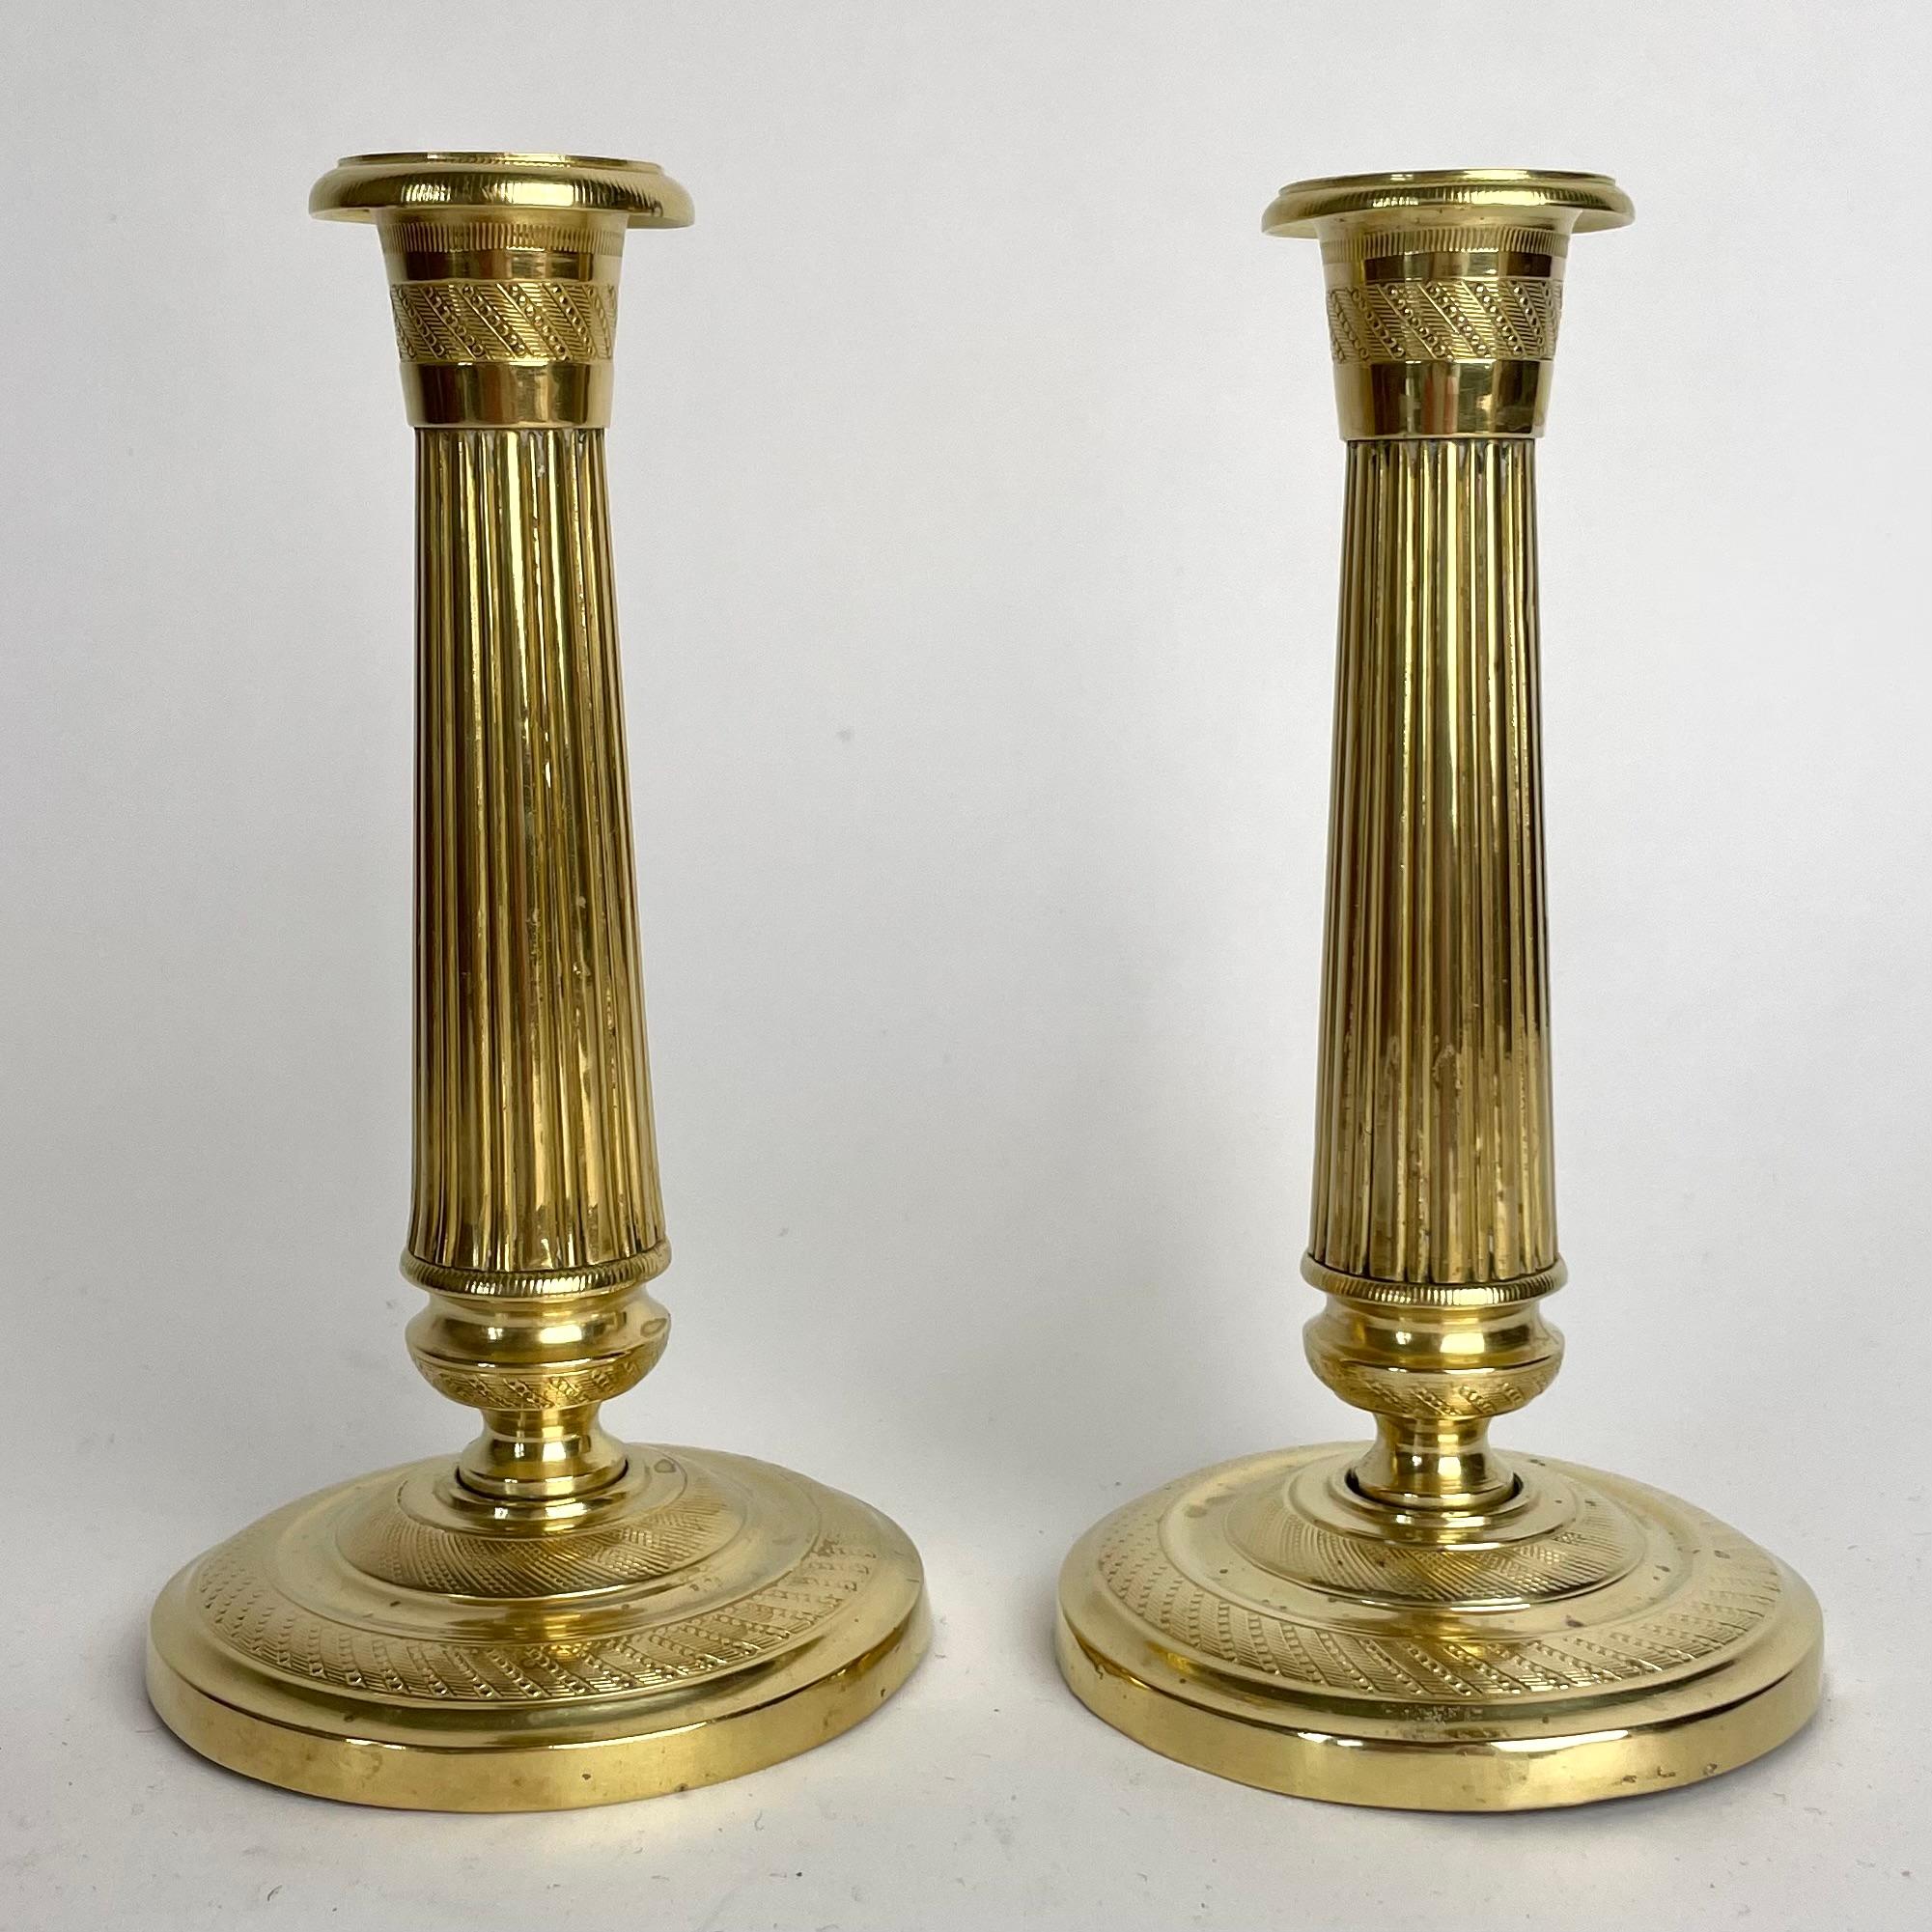 Ein schönes Paar kleiner Empire-Kerzenleuchter aus vergoldeter Bronze aus den 1820er Jahren. Sehr zeitgemäßes Design.

Abnutzung entsprechend dem Alter und dem Gebrauch 
